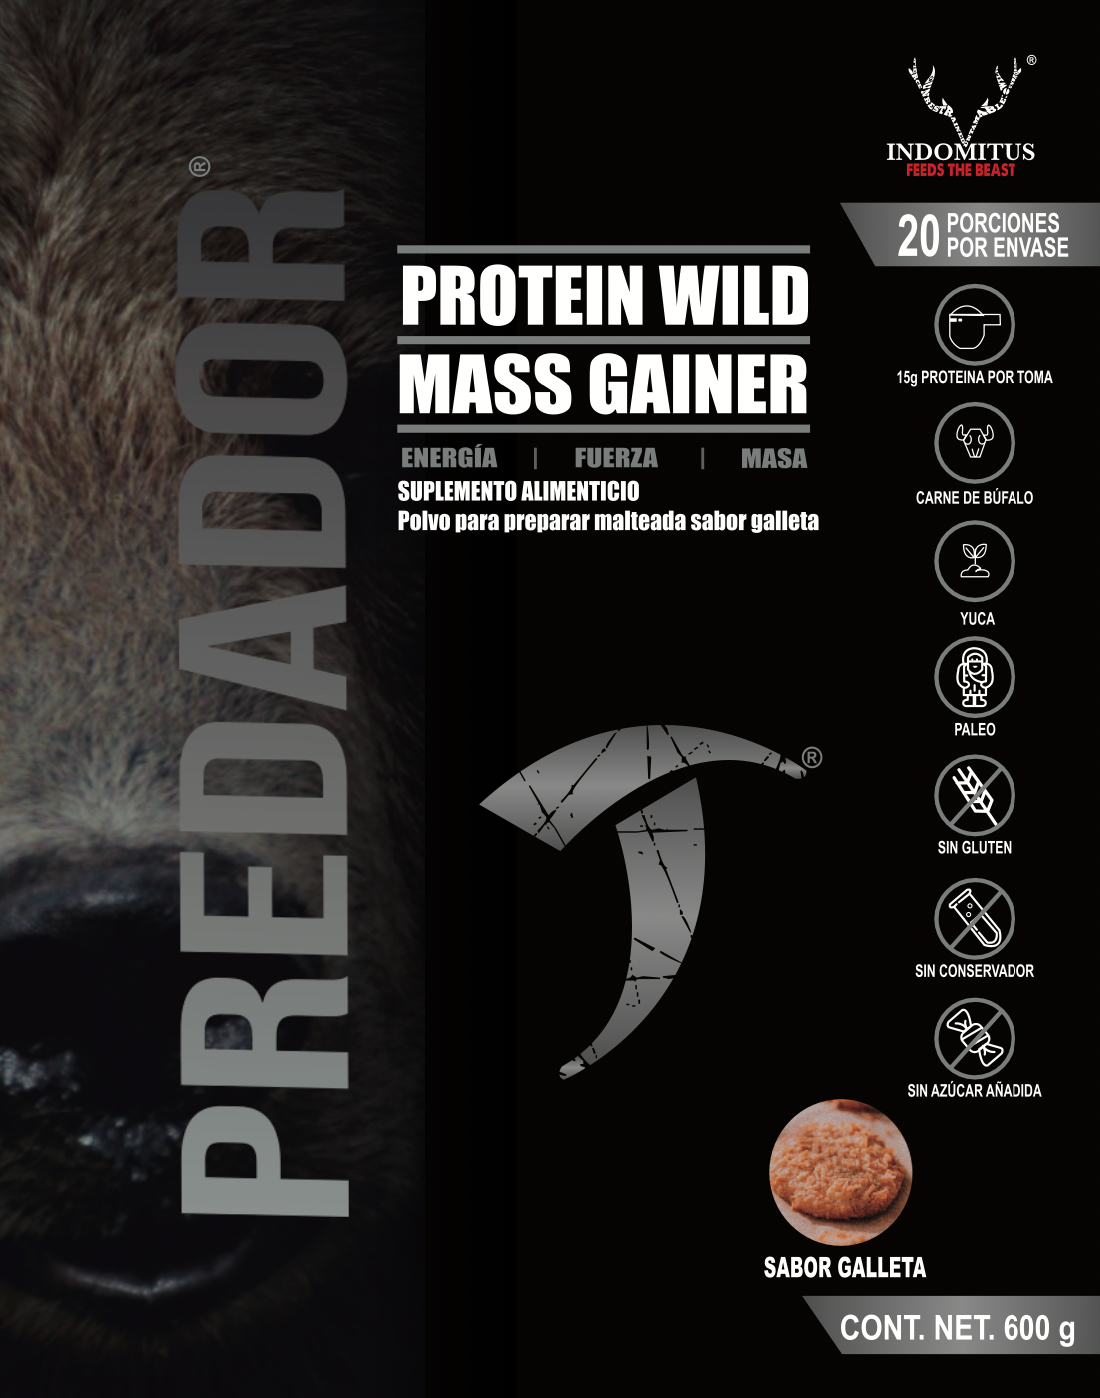 Protein wild mass gainer